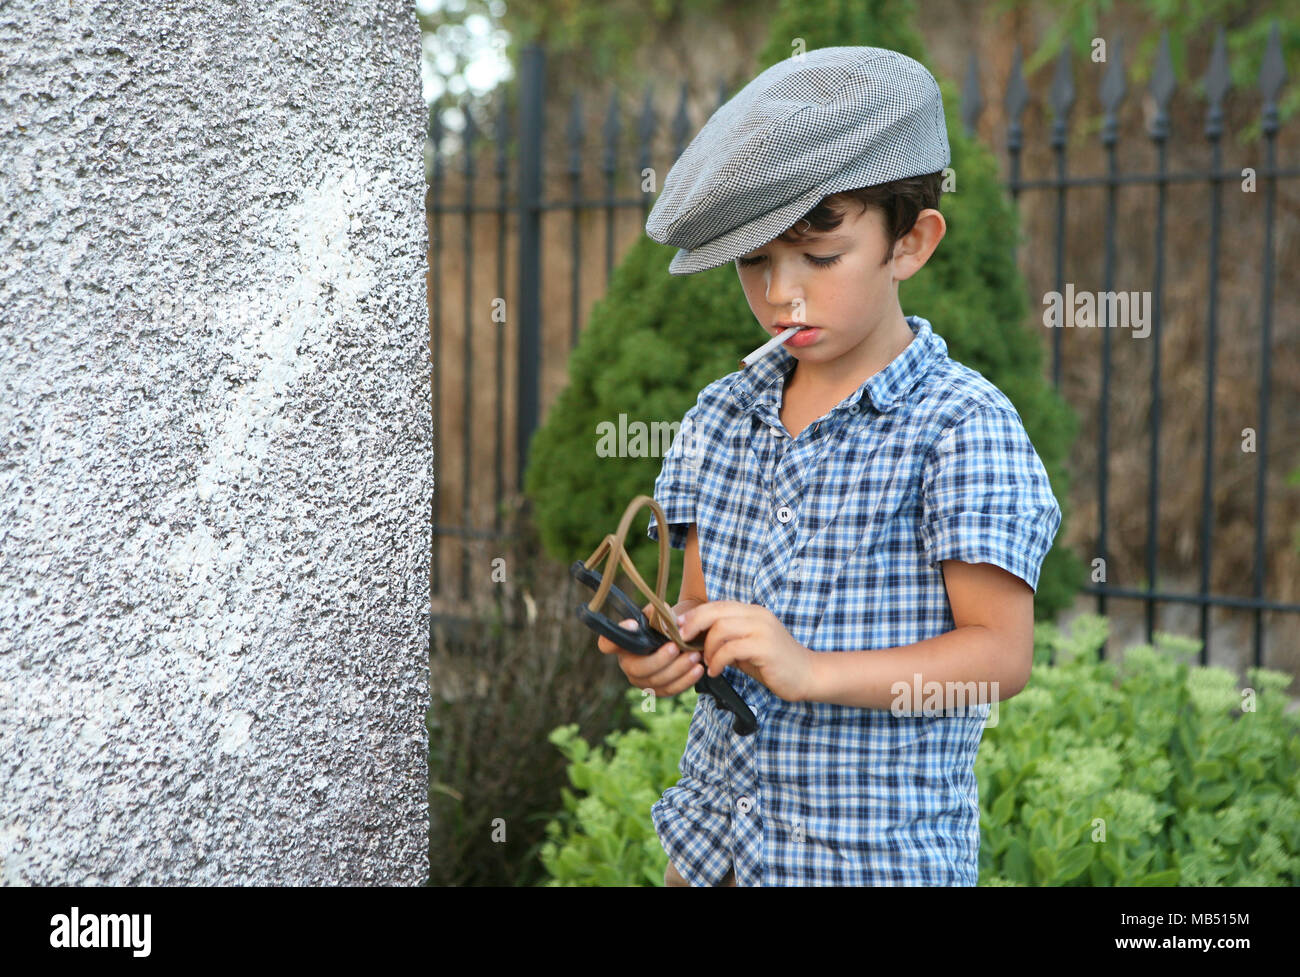 Junge mit Sigarette und Coppola Hut bereitet mit der Schleuder, Italien erschossen Stockfoto